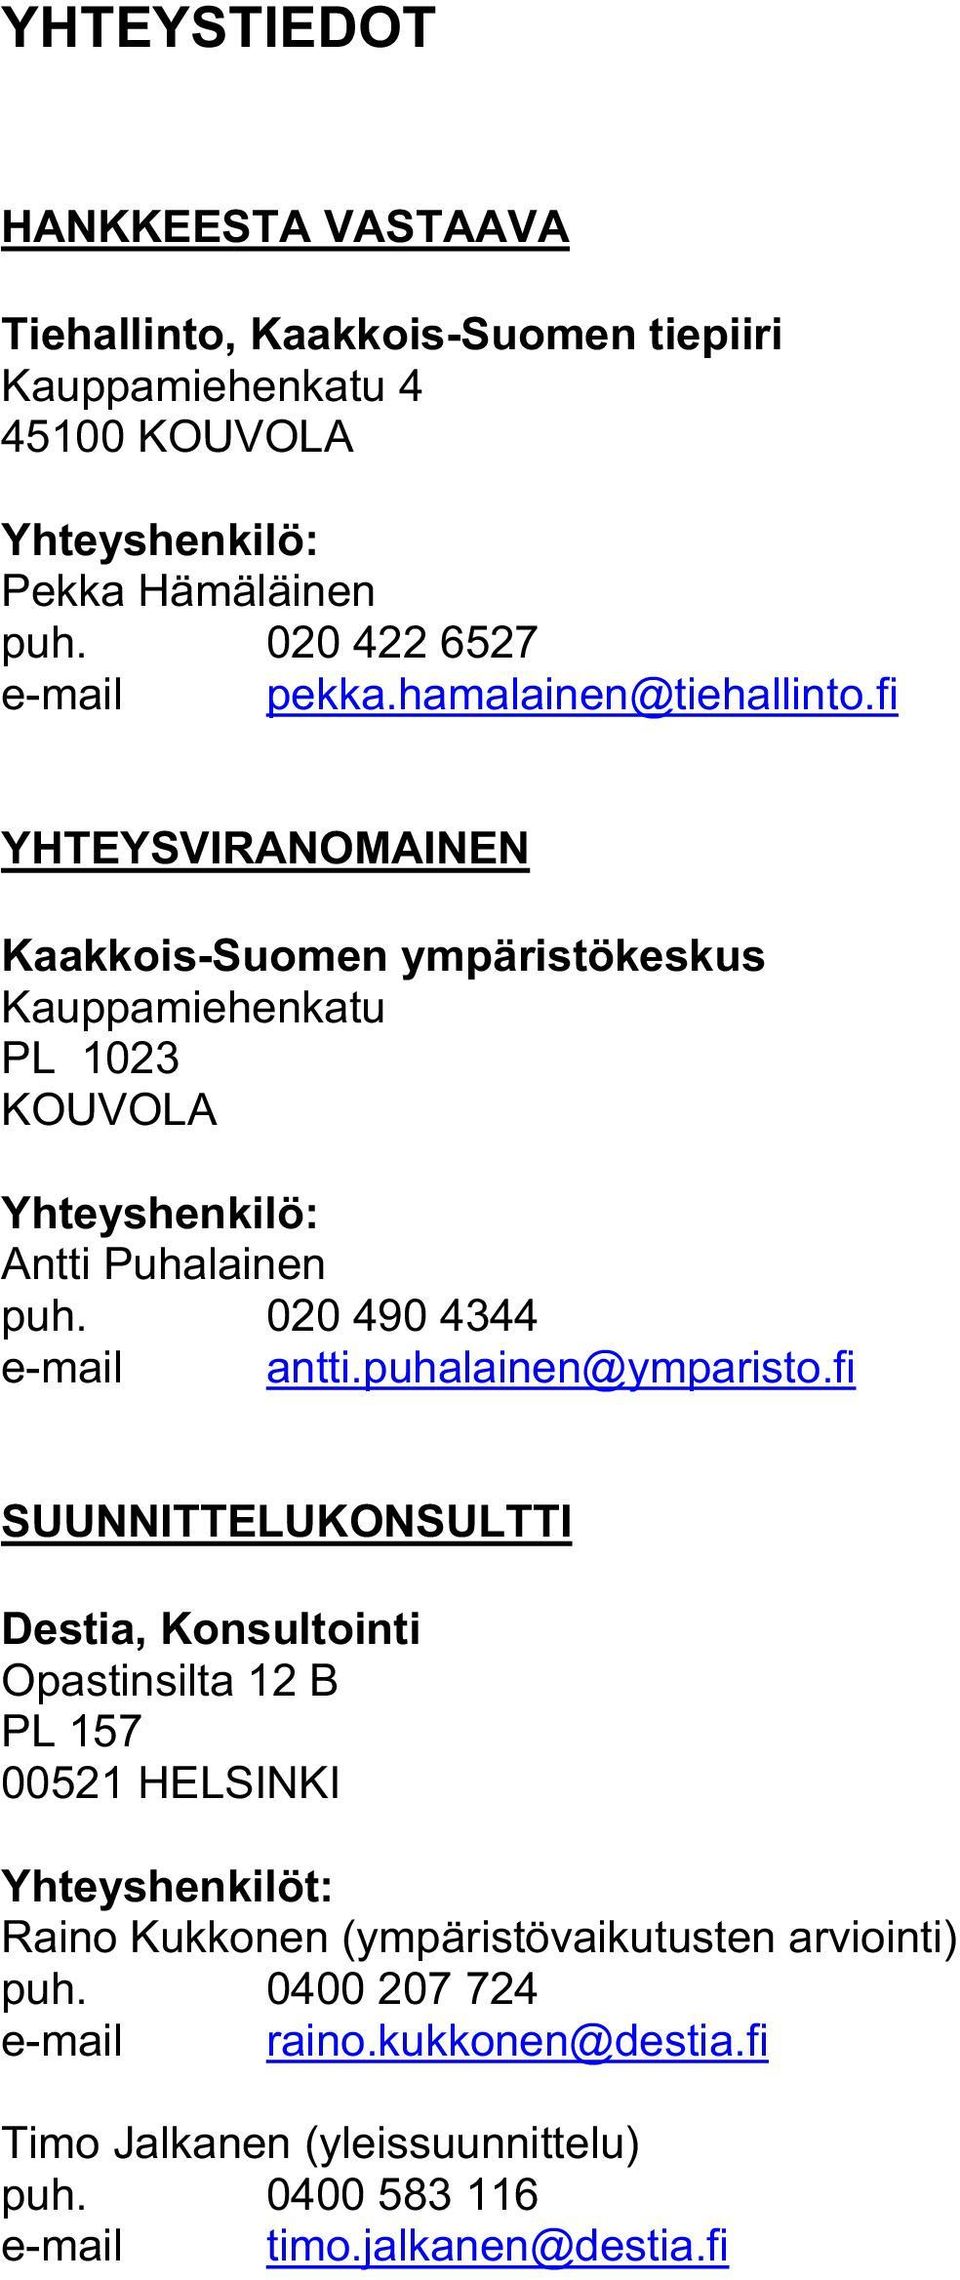 fi YHTEYSVIRANOMAINEN Kaakkois-Suomen ympäristökeskus Kauppamiehenkatu PL 1023 KOUVOLA Yhteyshenkilö: Antti Puhalainen puh. 020 490 4344 e-mail antti.